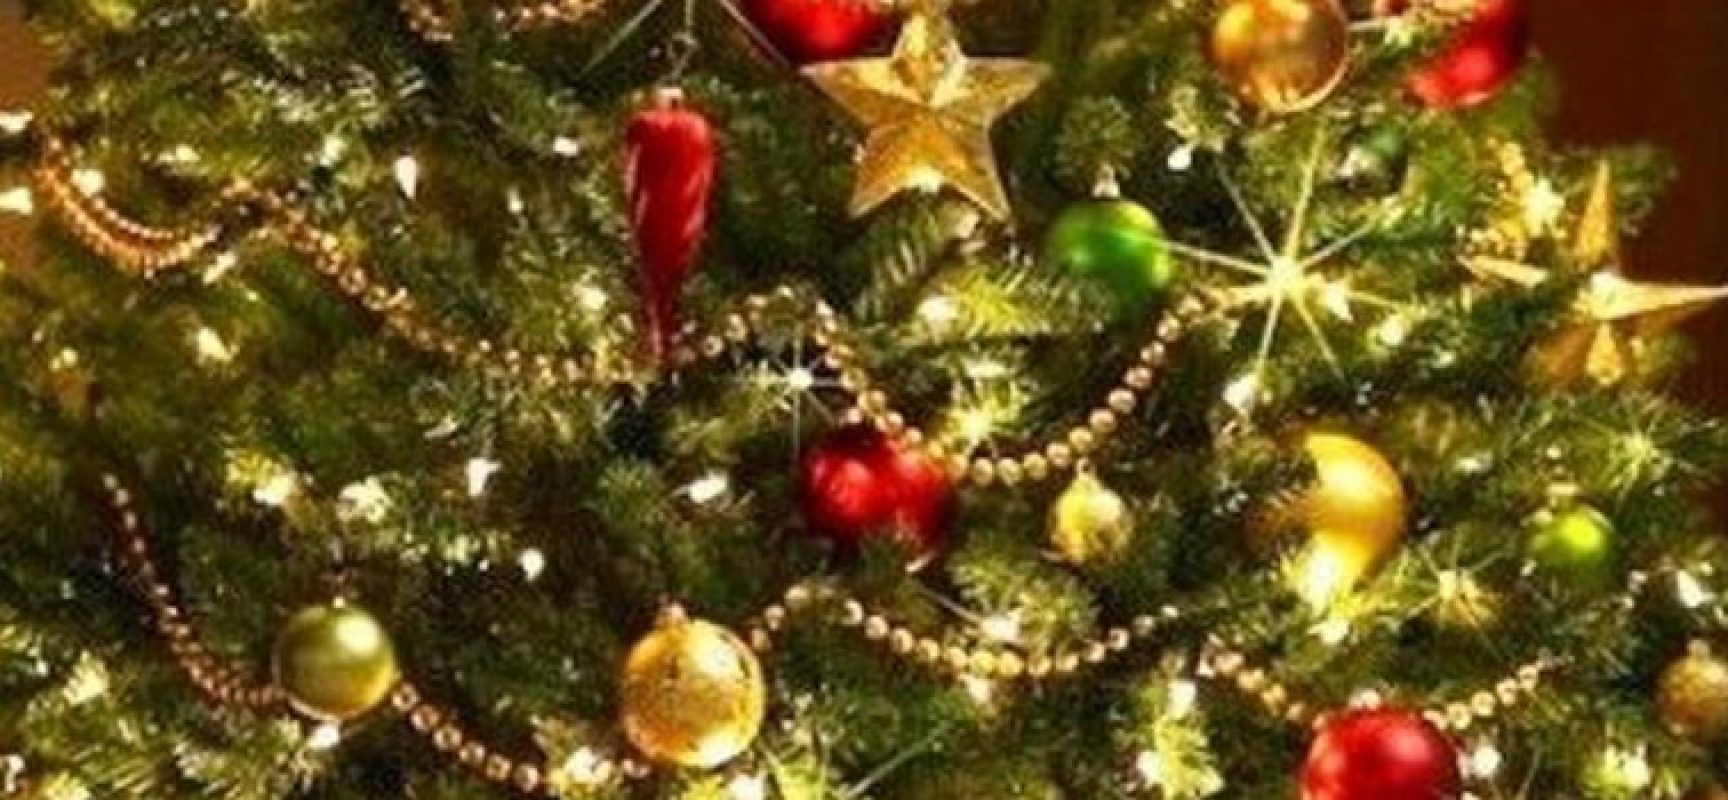 Domani a Bisceglie festa in piazza e accensione dell’albero di Natale